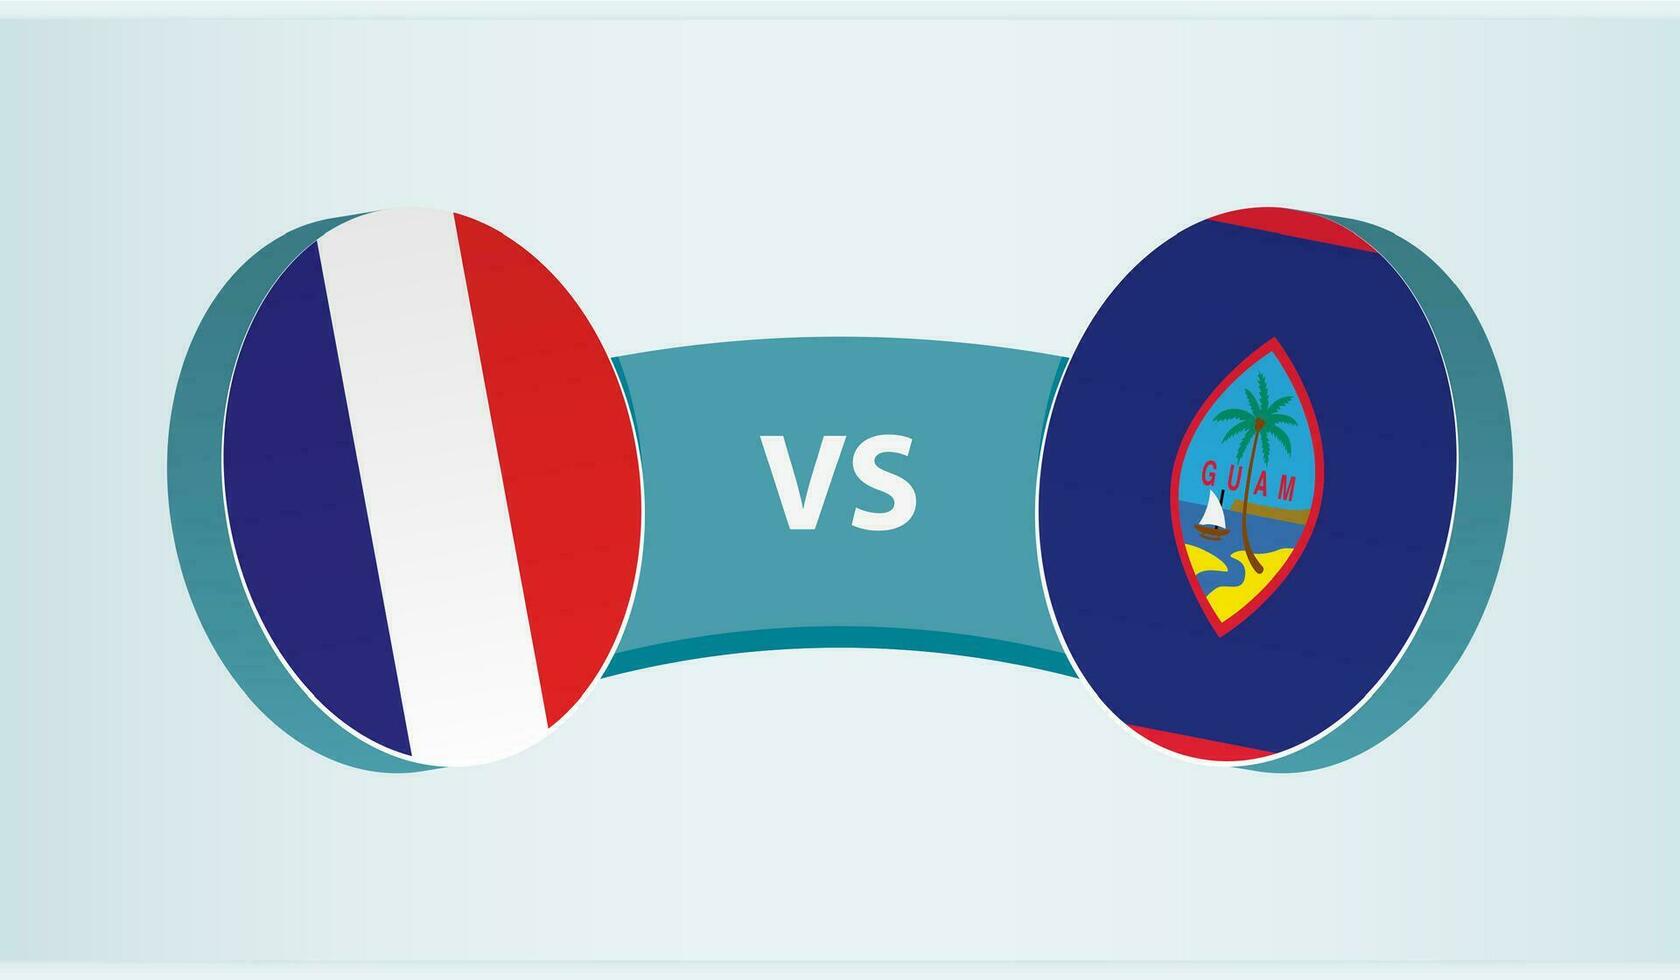 Frankrike mot guam, team sporter konkurrens begrepp. vektor